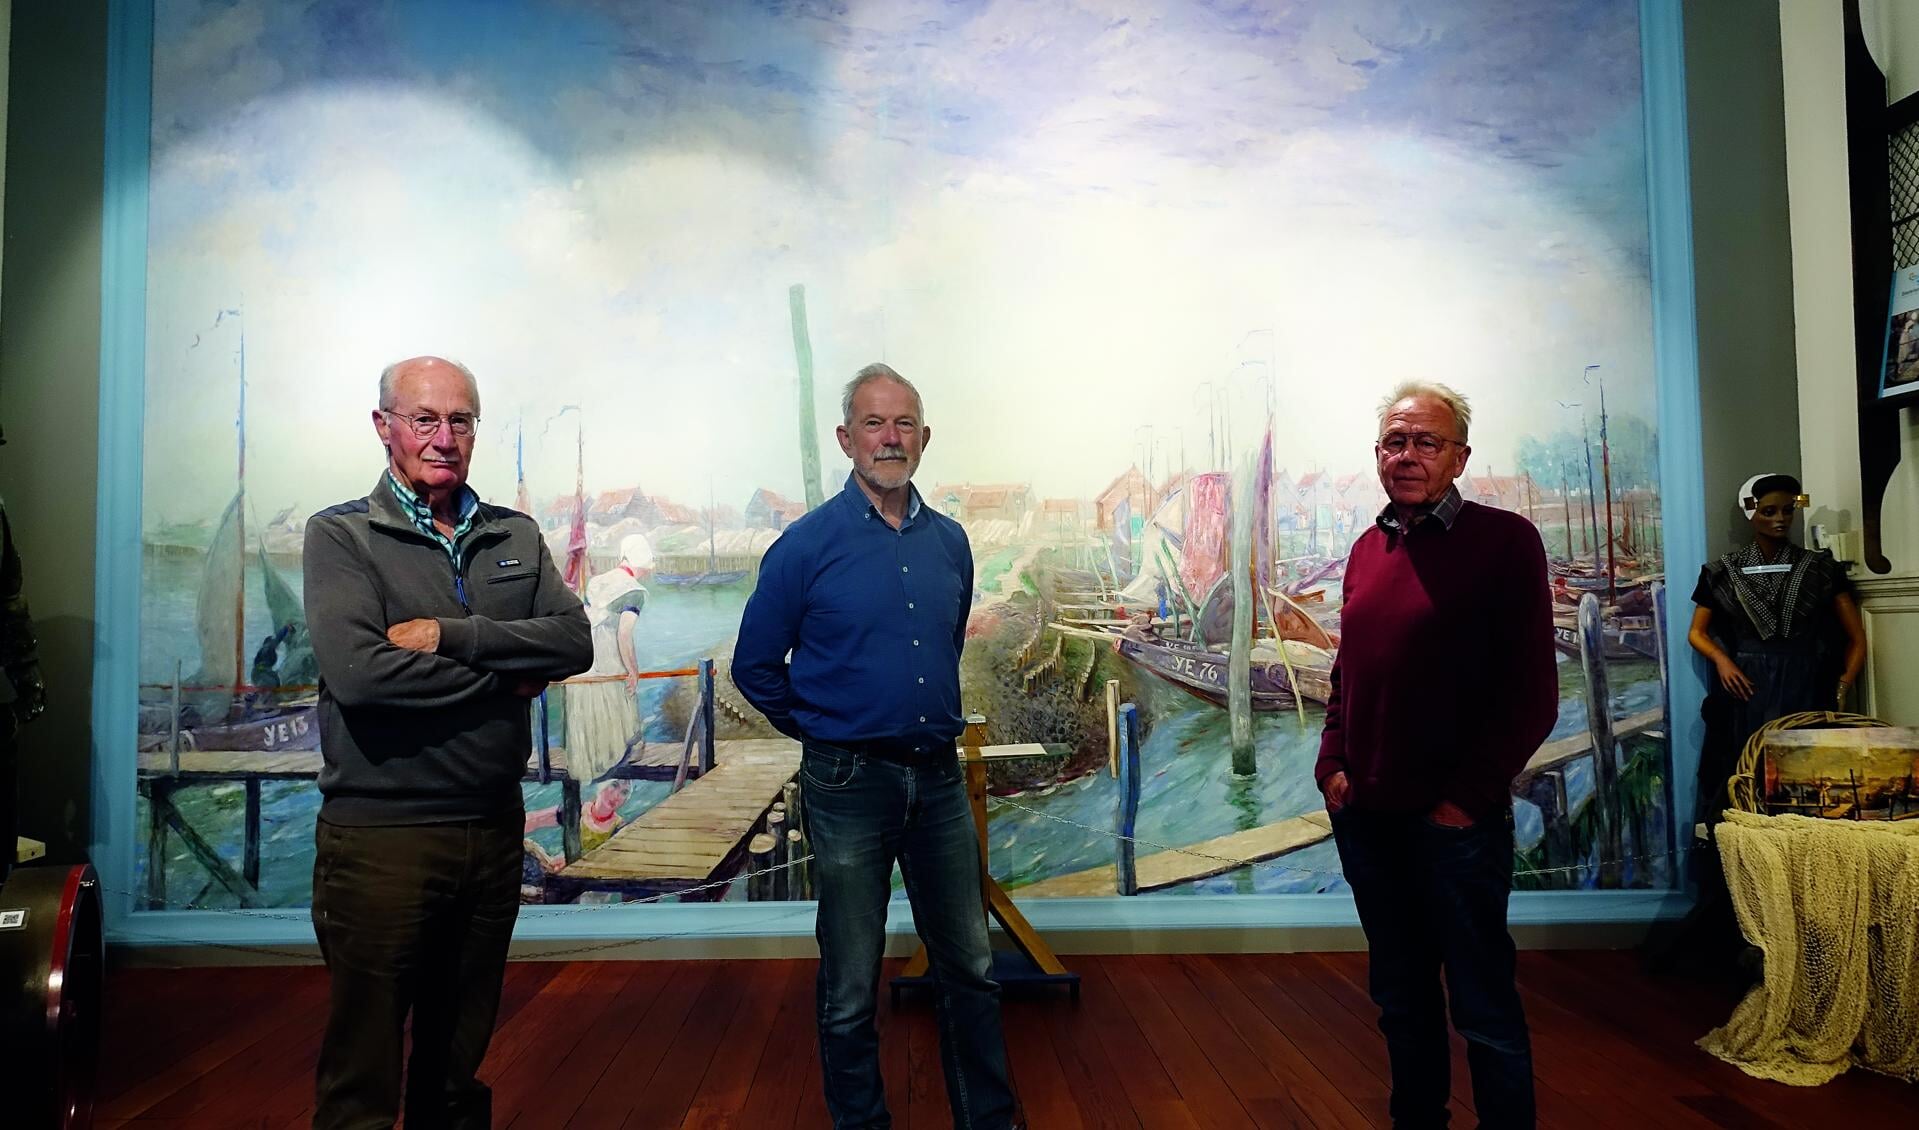 Voorzitter Adri Boone, Leo Pekaar en Adri de Koeijer bij het panoramaschilderij ‘Gezicht op de haven van Yerseke’, een van de blikvangers in het museum.